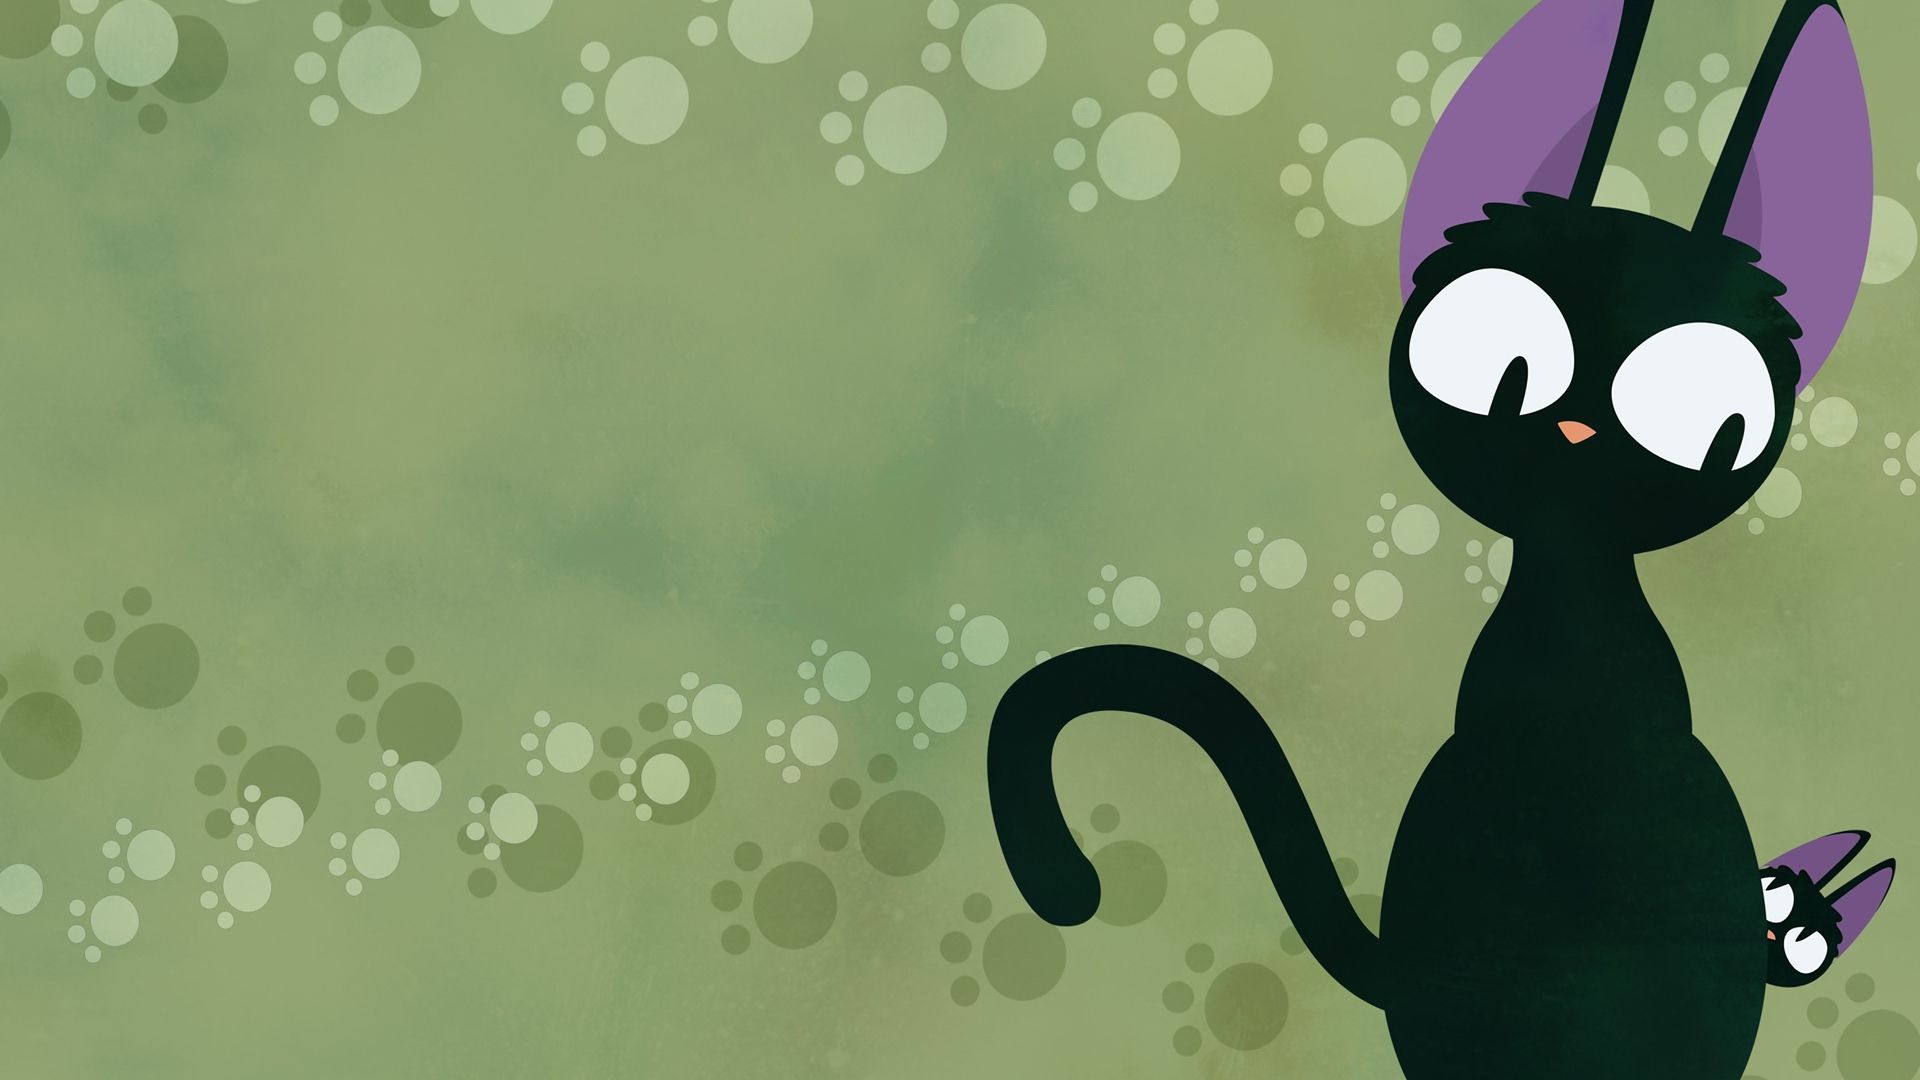 安卓(android)动漫 卡通 小猫高清手机壁纸免费下载,安心市场